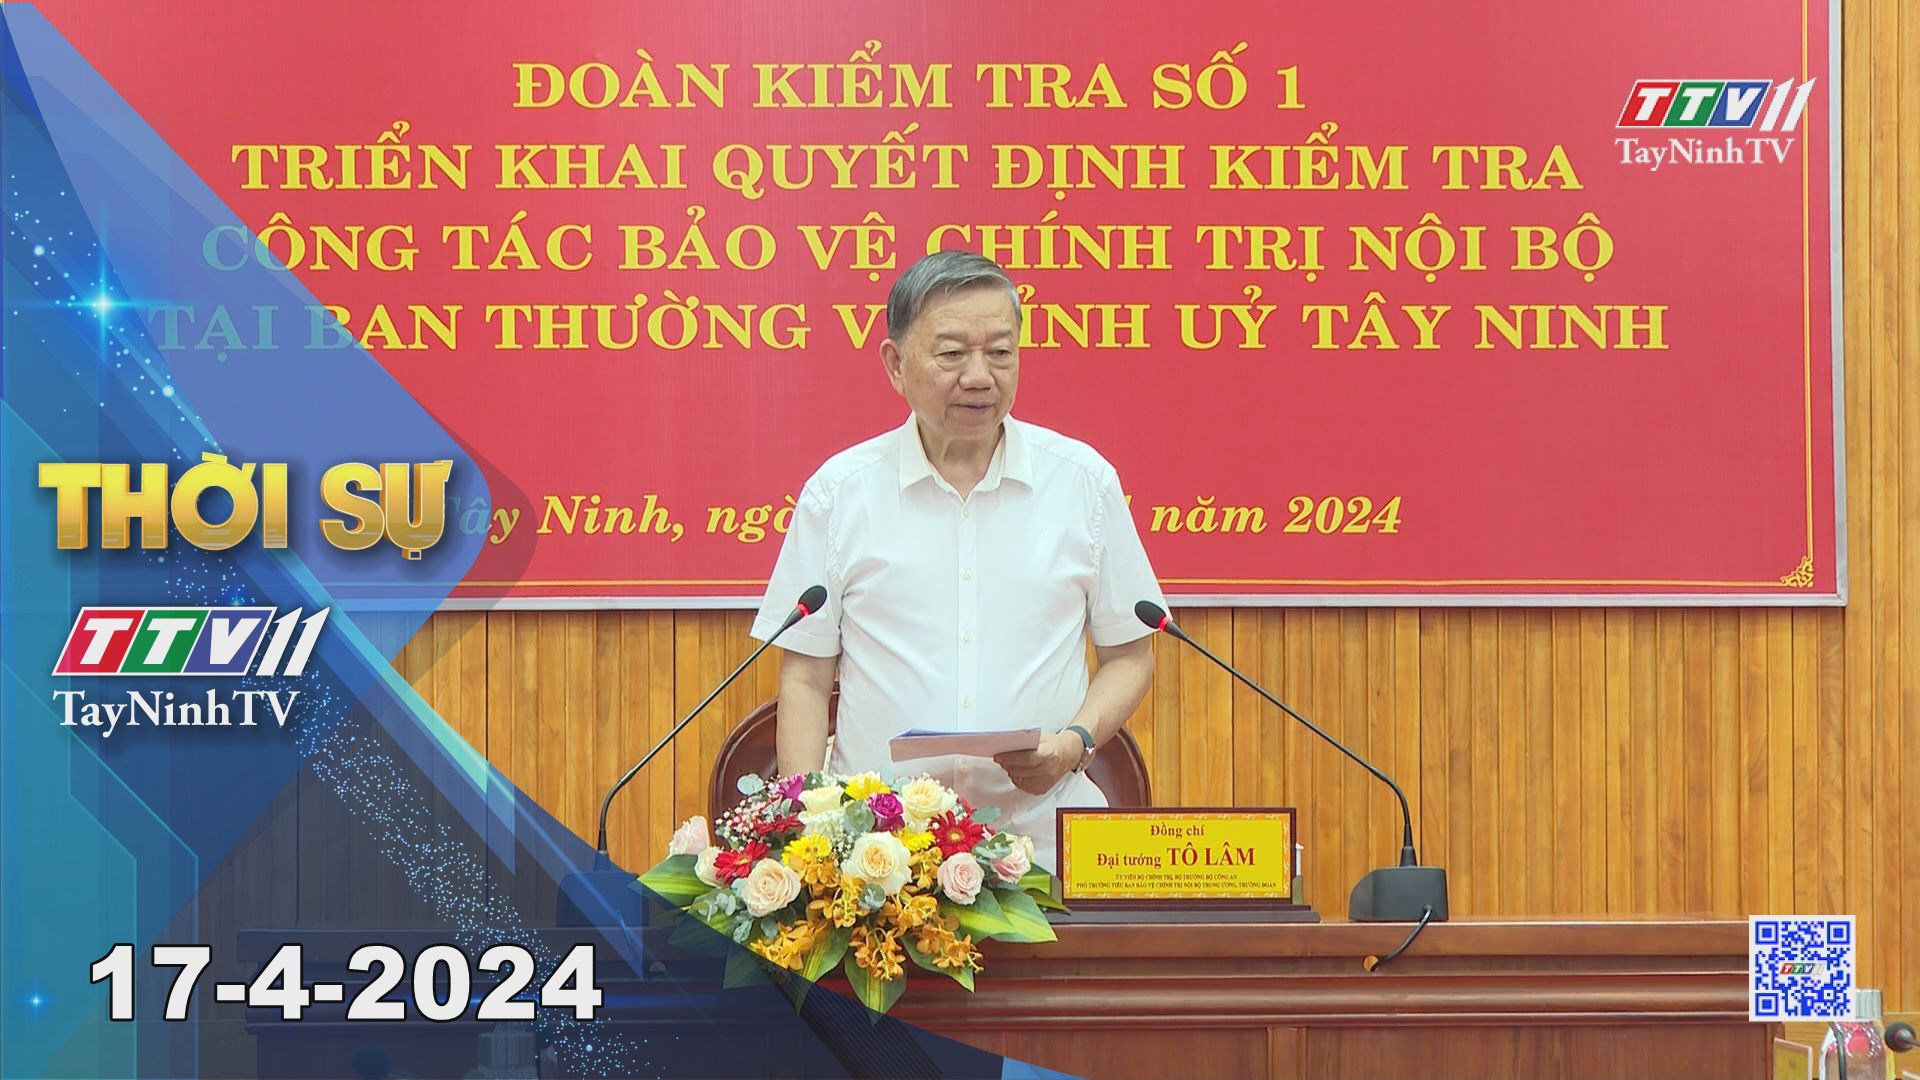 Thời sự Tây Ninh 17-4-2024 | Tin tức hôm nay | TayNinhTV